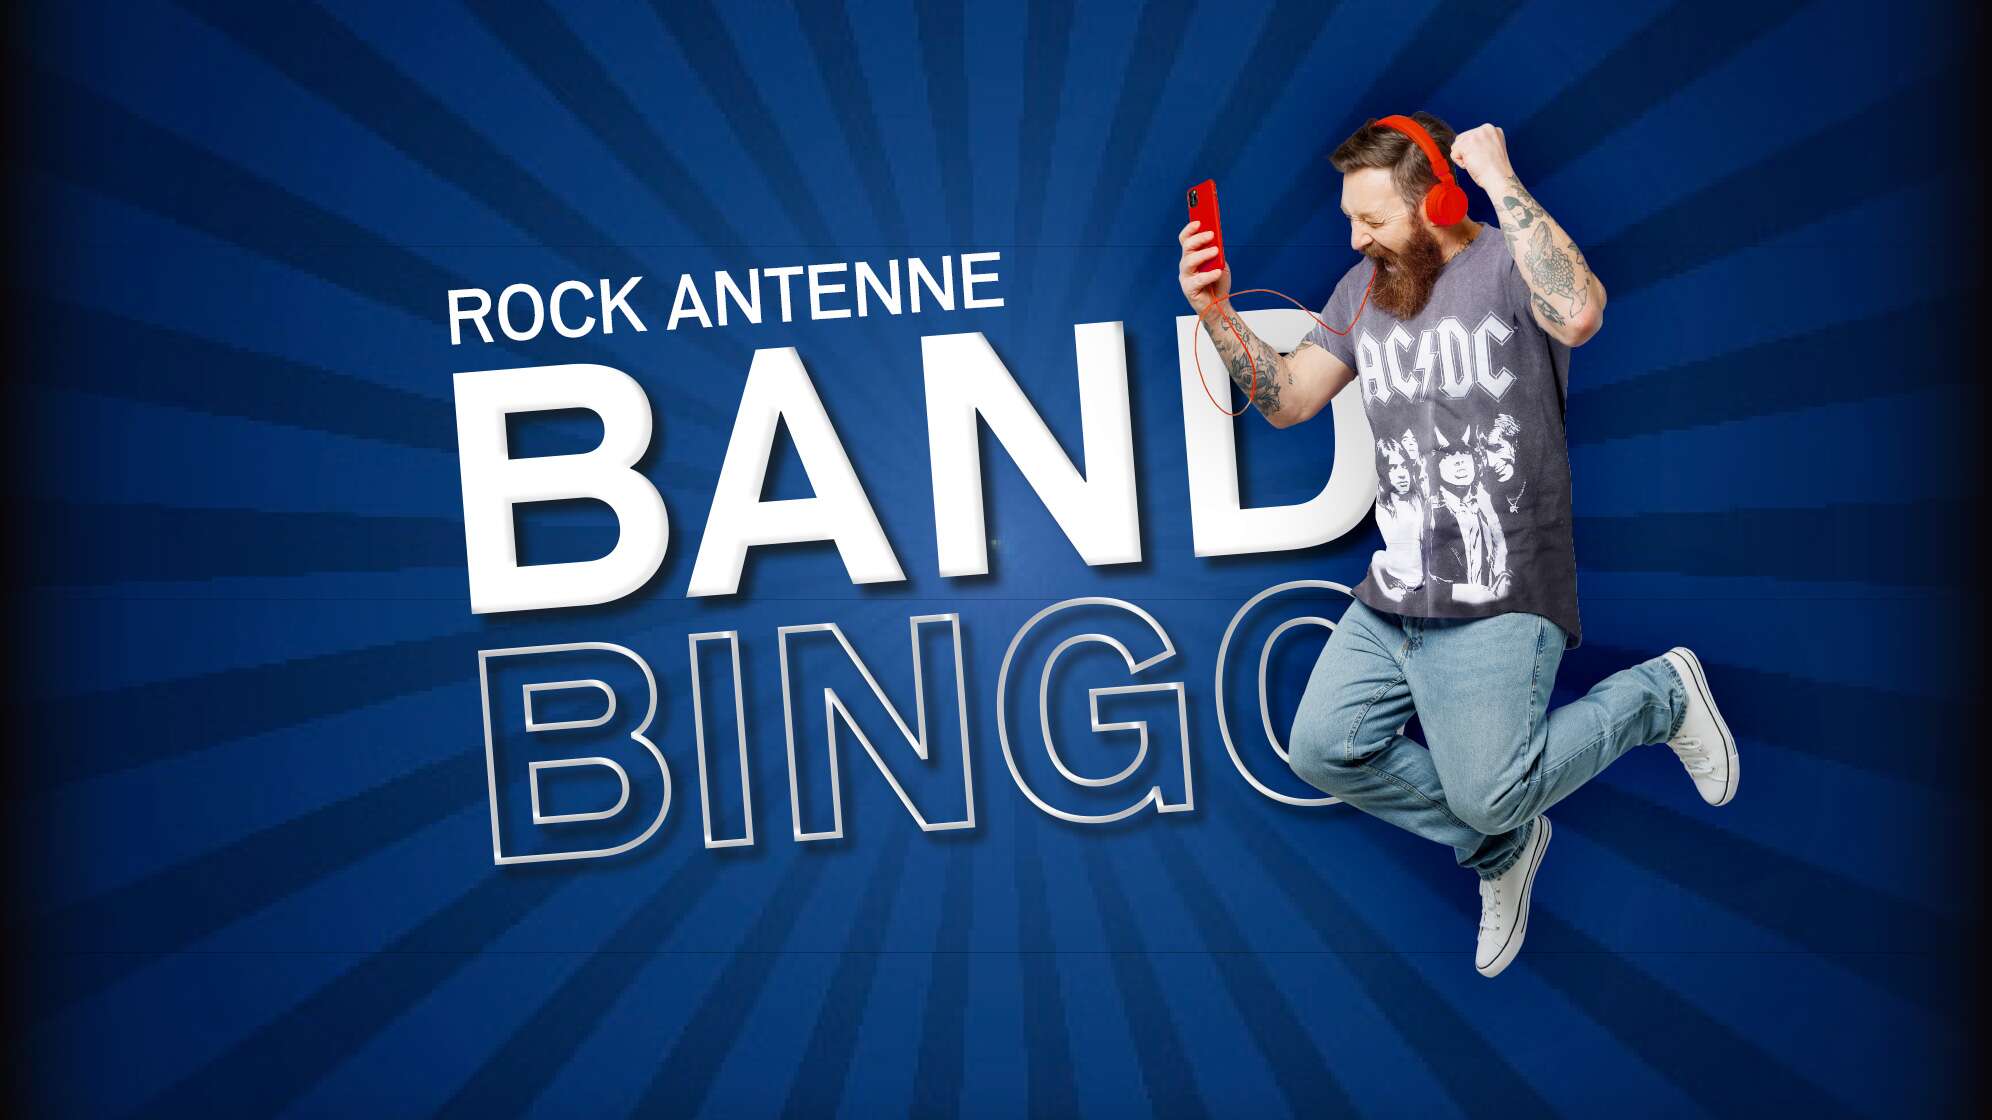 Ein jubelnder Mann mit AC/DC Shirt, Kopfhörern und Smartphone und dazu der Text "ROCK ANTENNE Band Bingo"